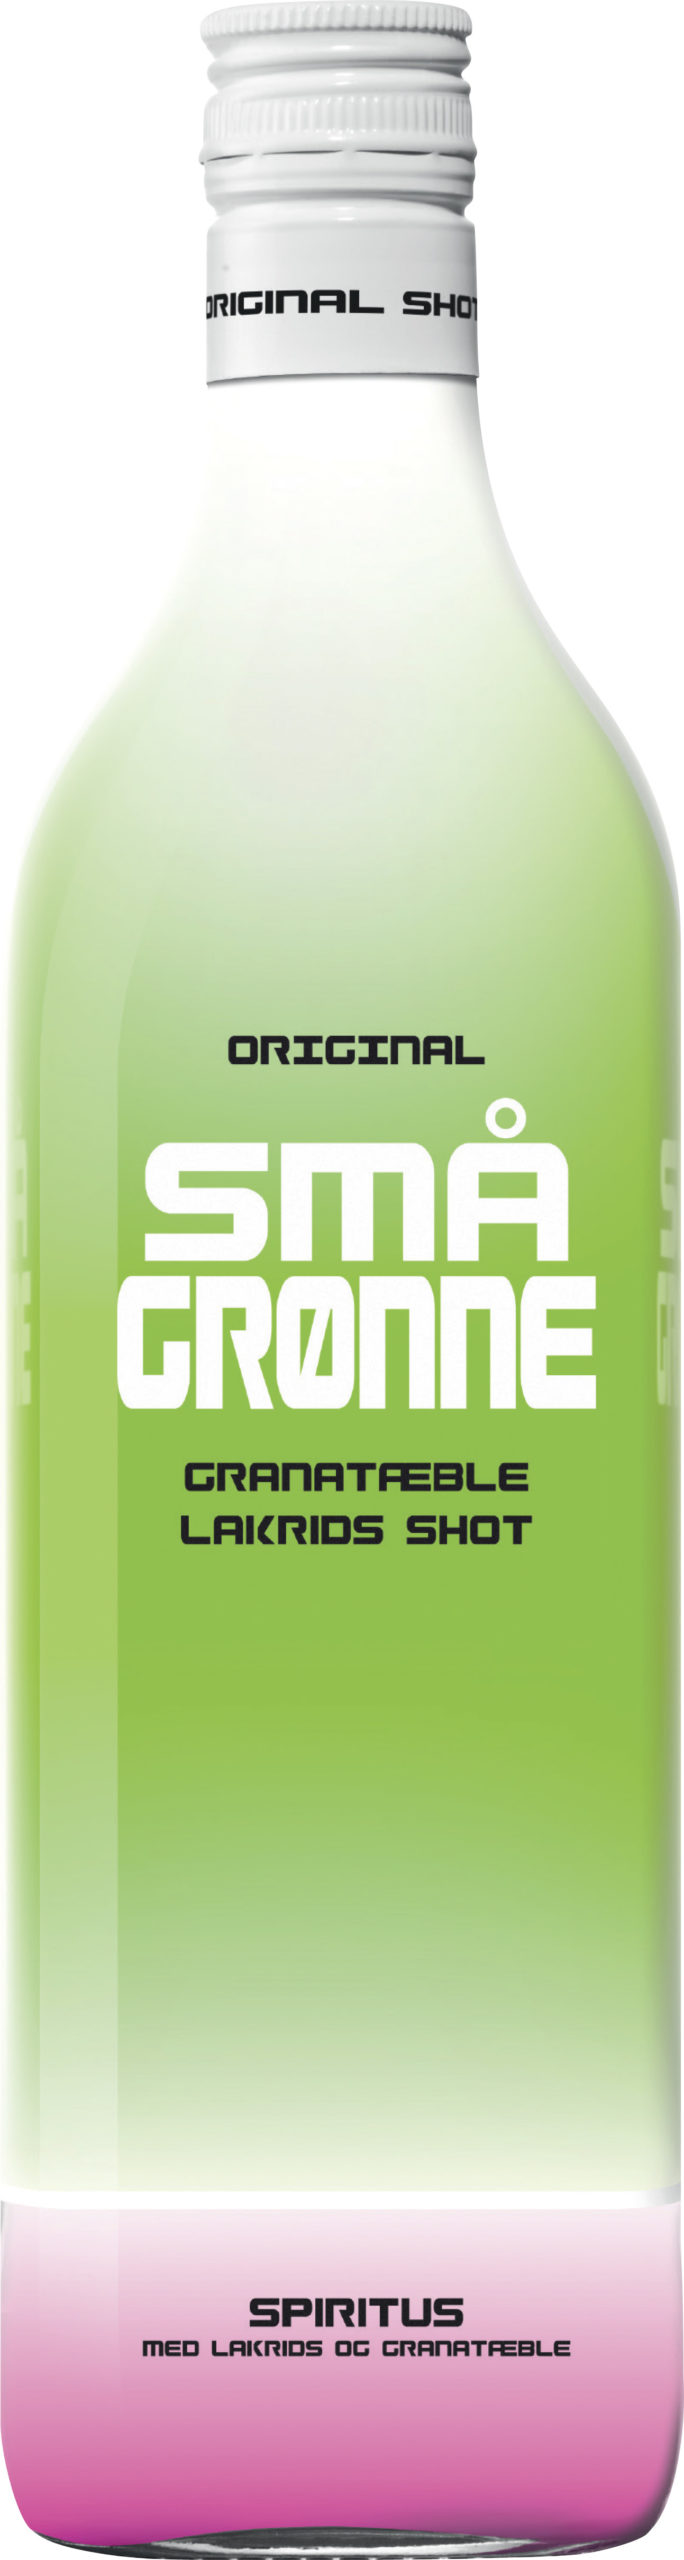 Små Gronne Granatable Lakrids Shot plastic bottle